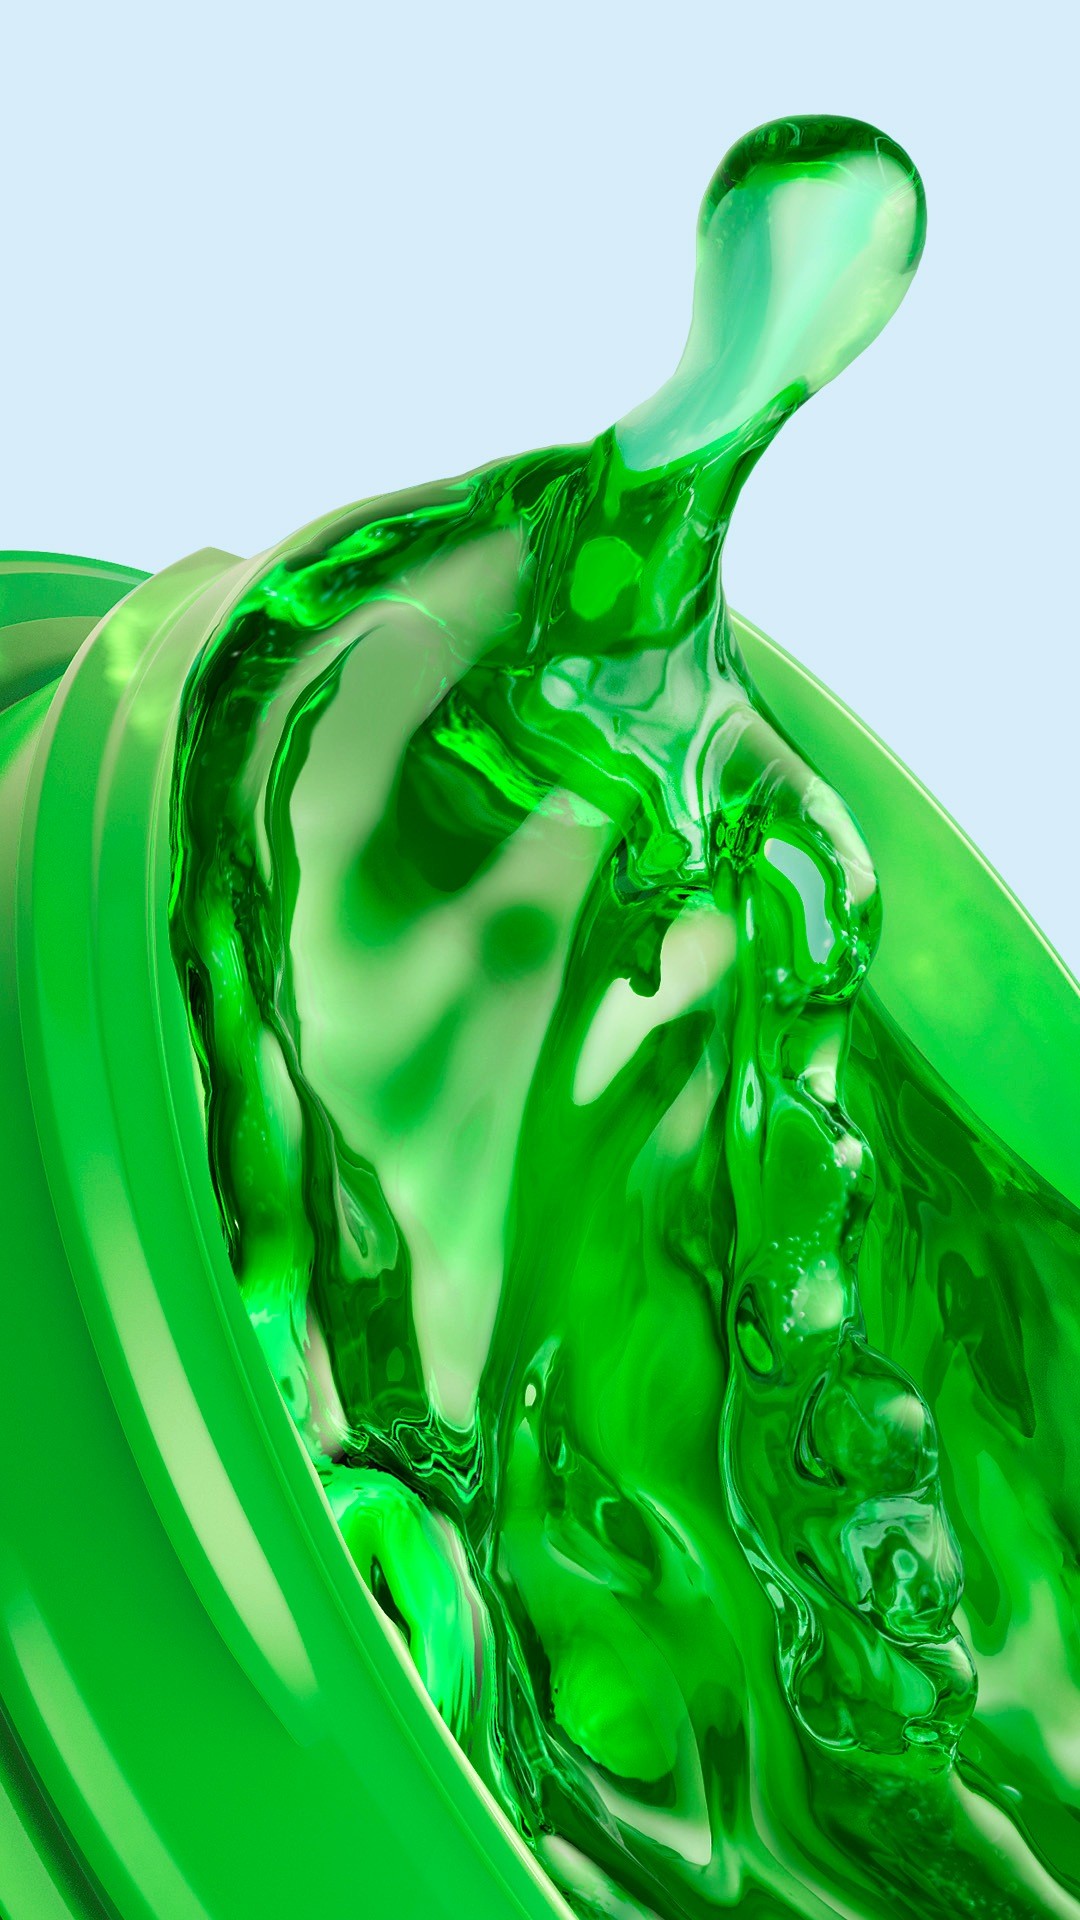 Wallpaper Green Liquid iPhone